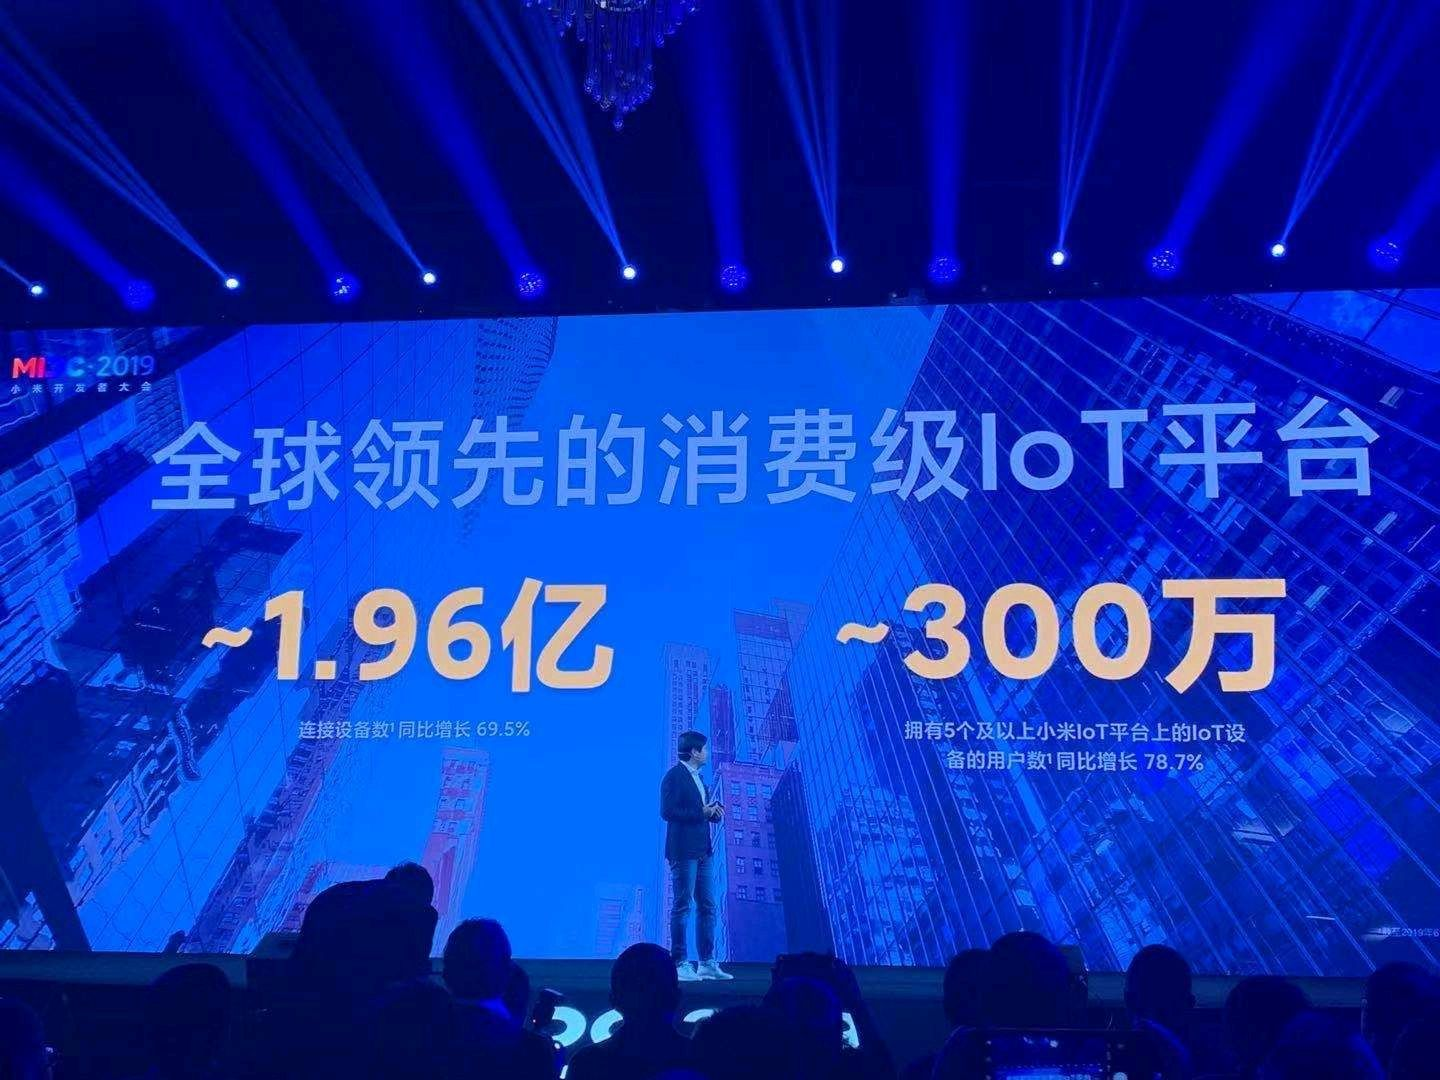 小米拥有全球领先的消费级 IoT 平台